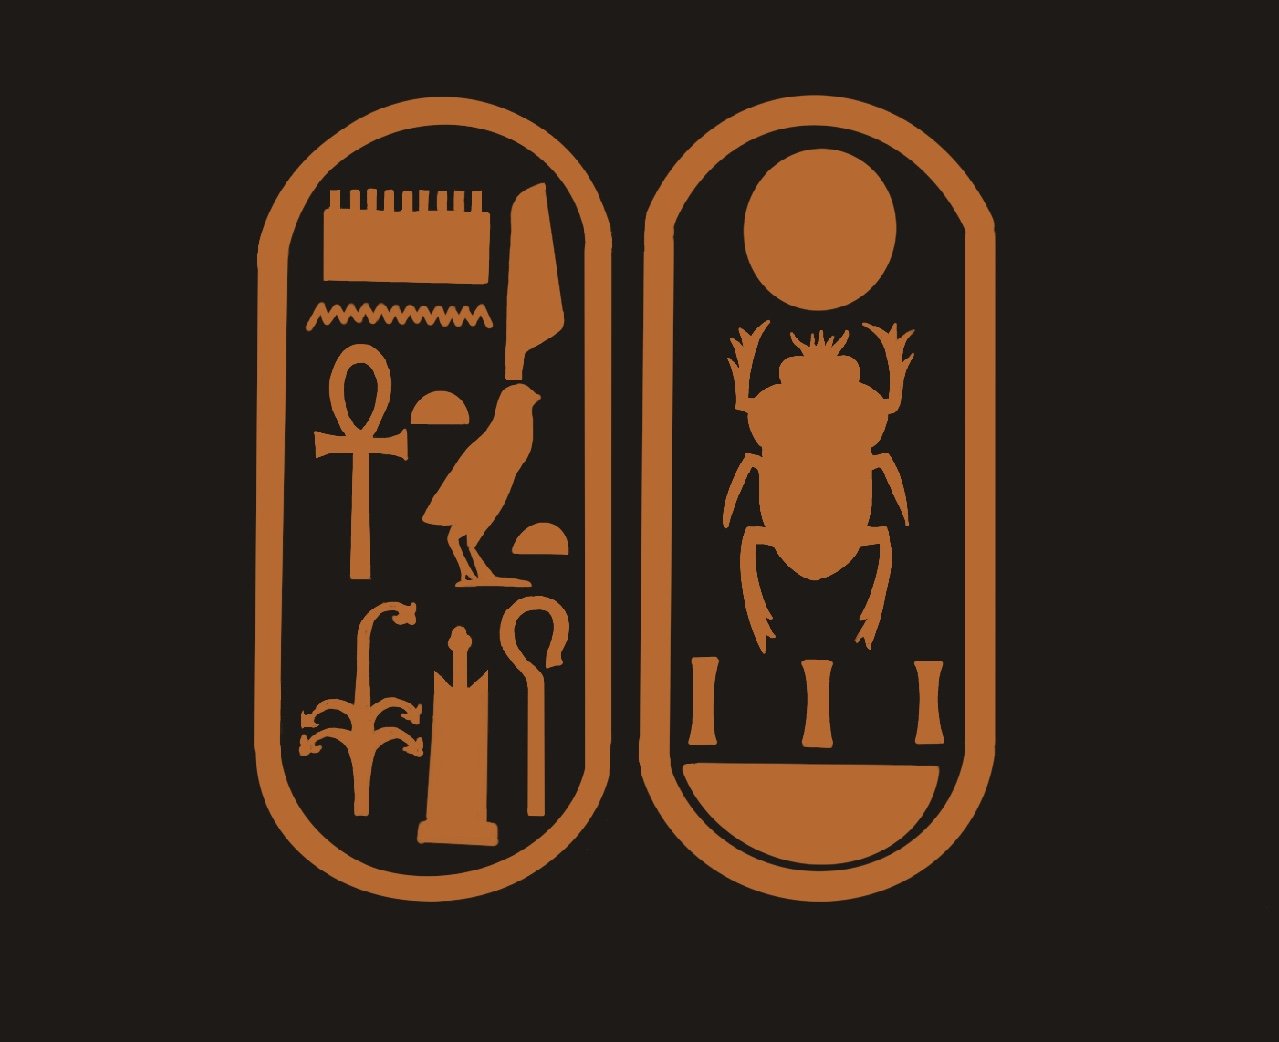 The Cartouche of Tutankhamen